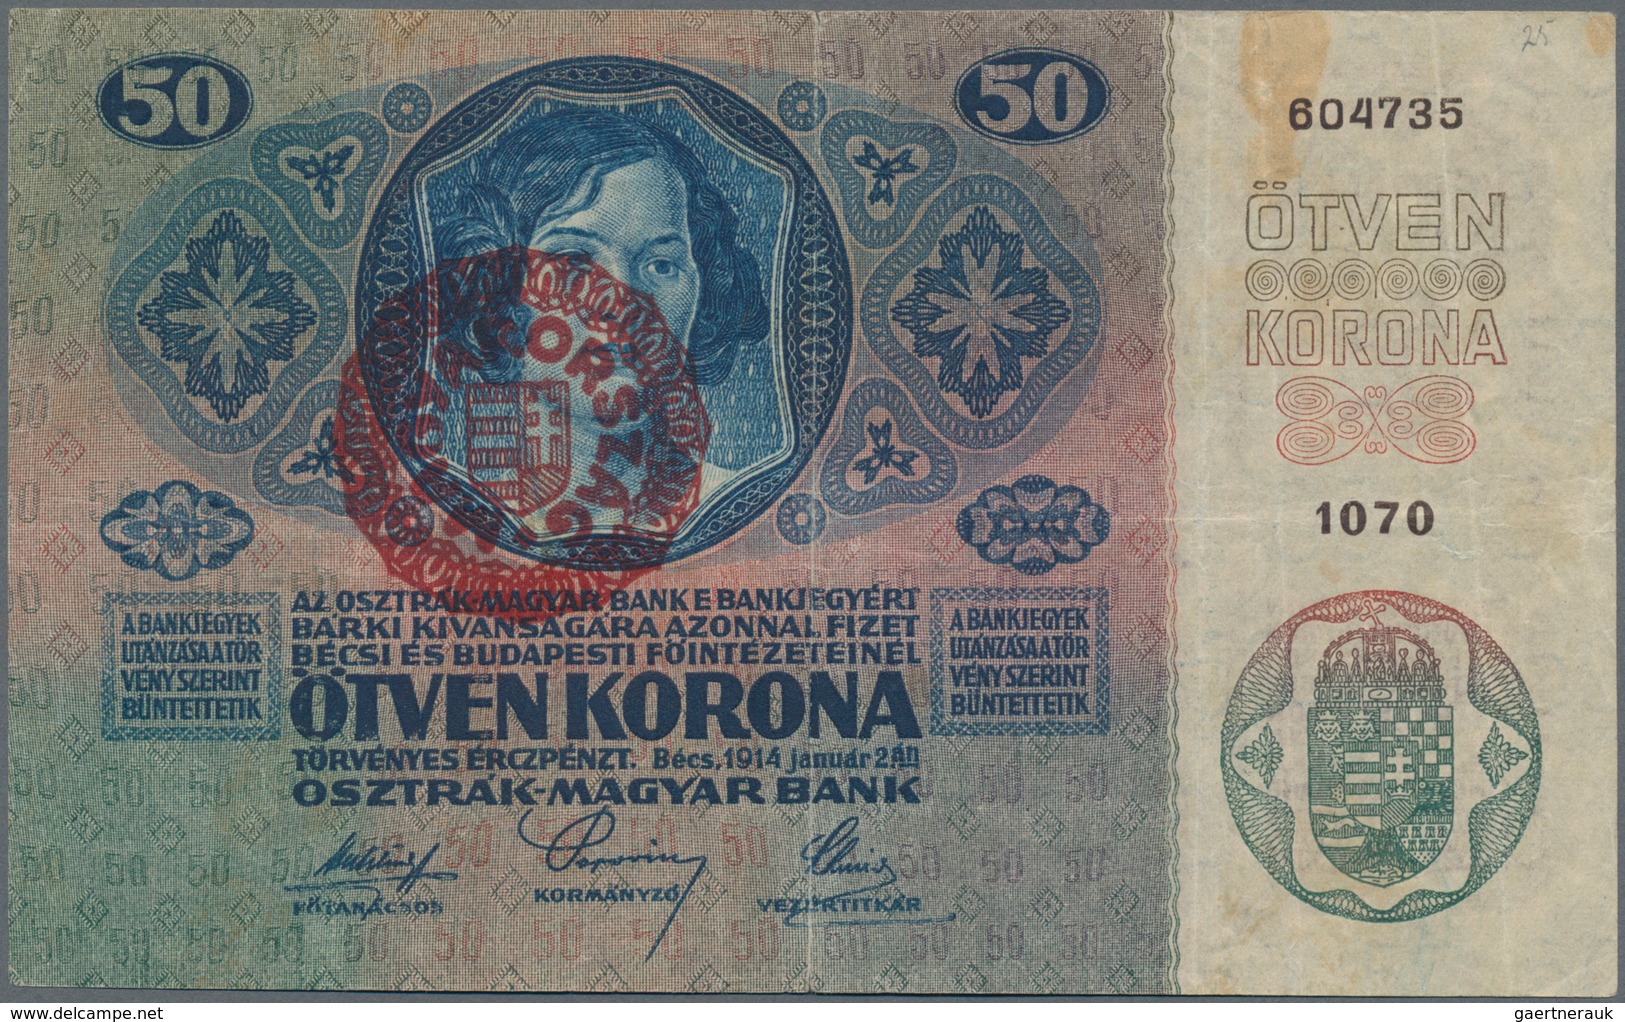 Hungary / Ungarn: Osztrák-Magyar Bank / Oesterreichisch-Ungarische Bank set with 13 banknotes of the